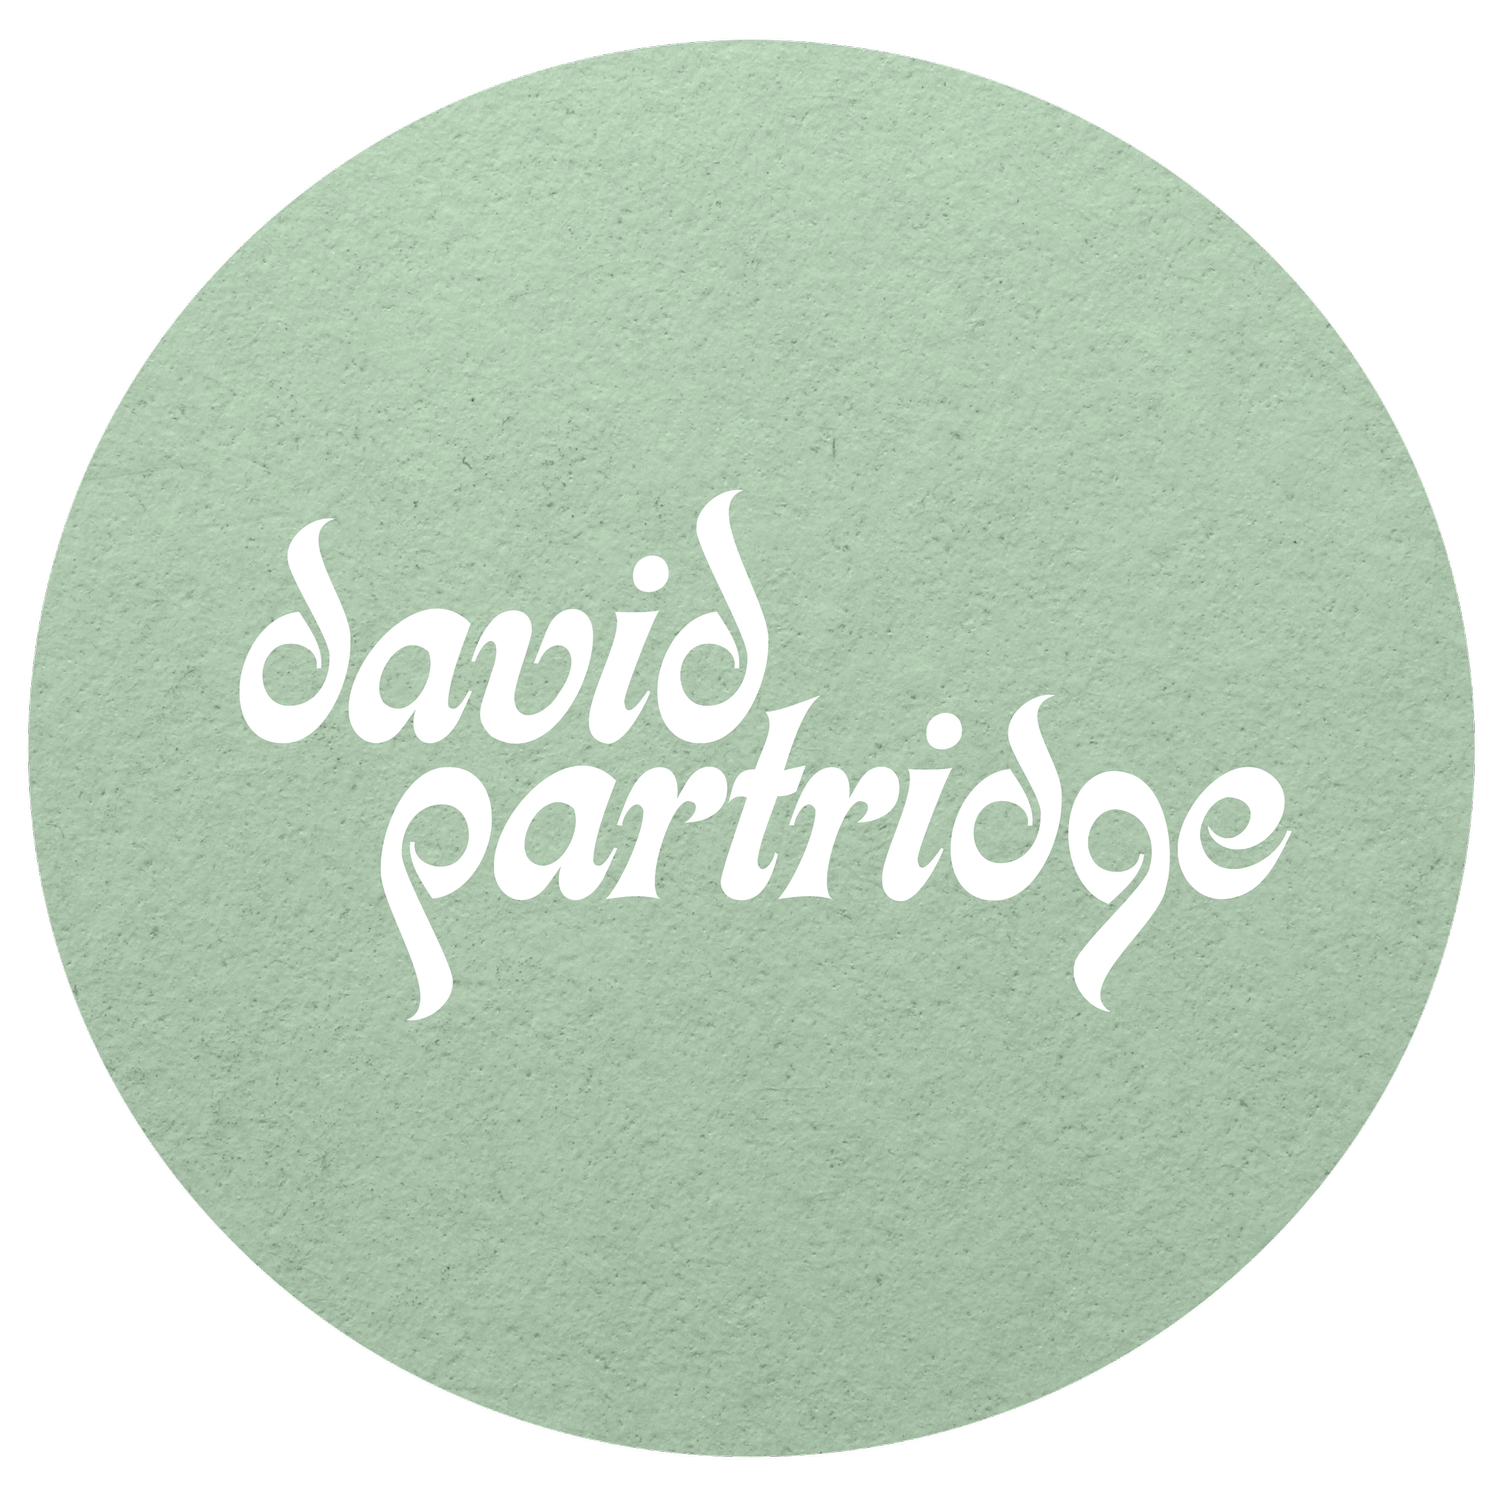 David Partridge Graphic Design